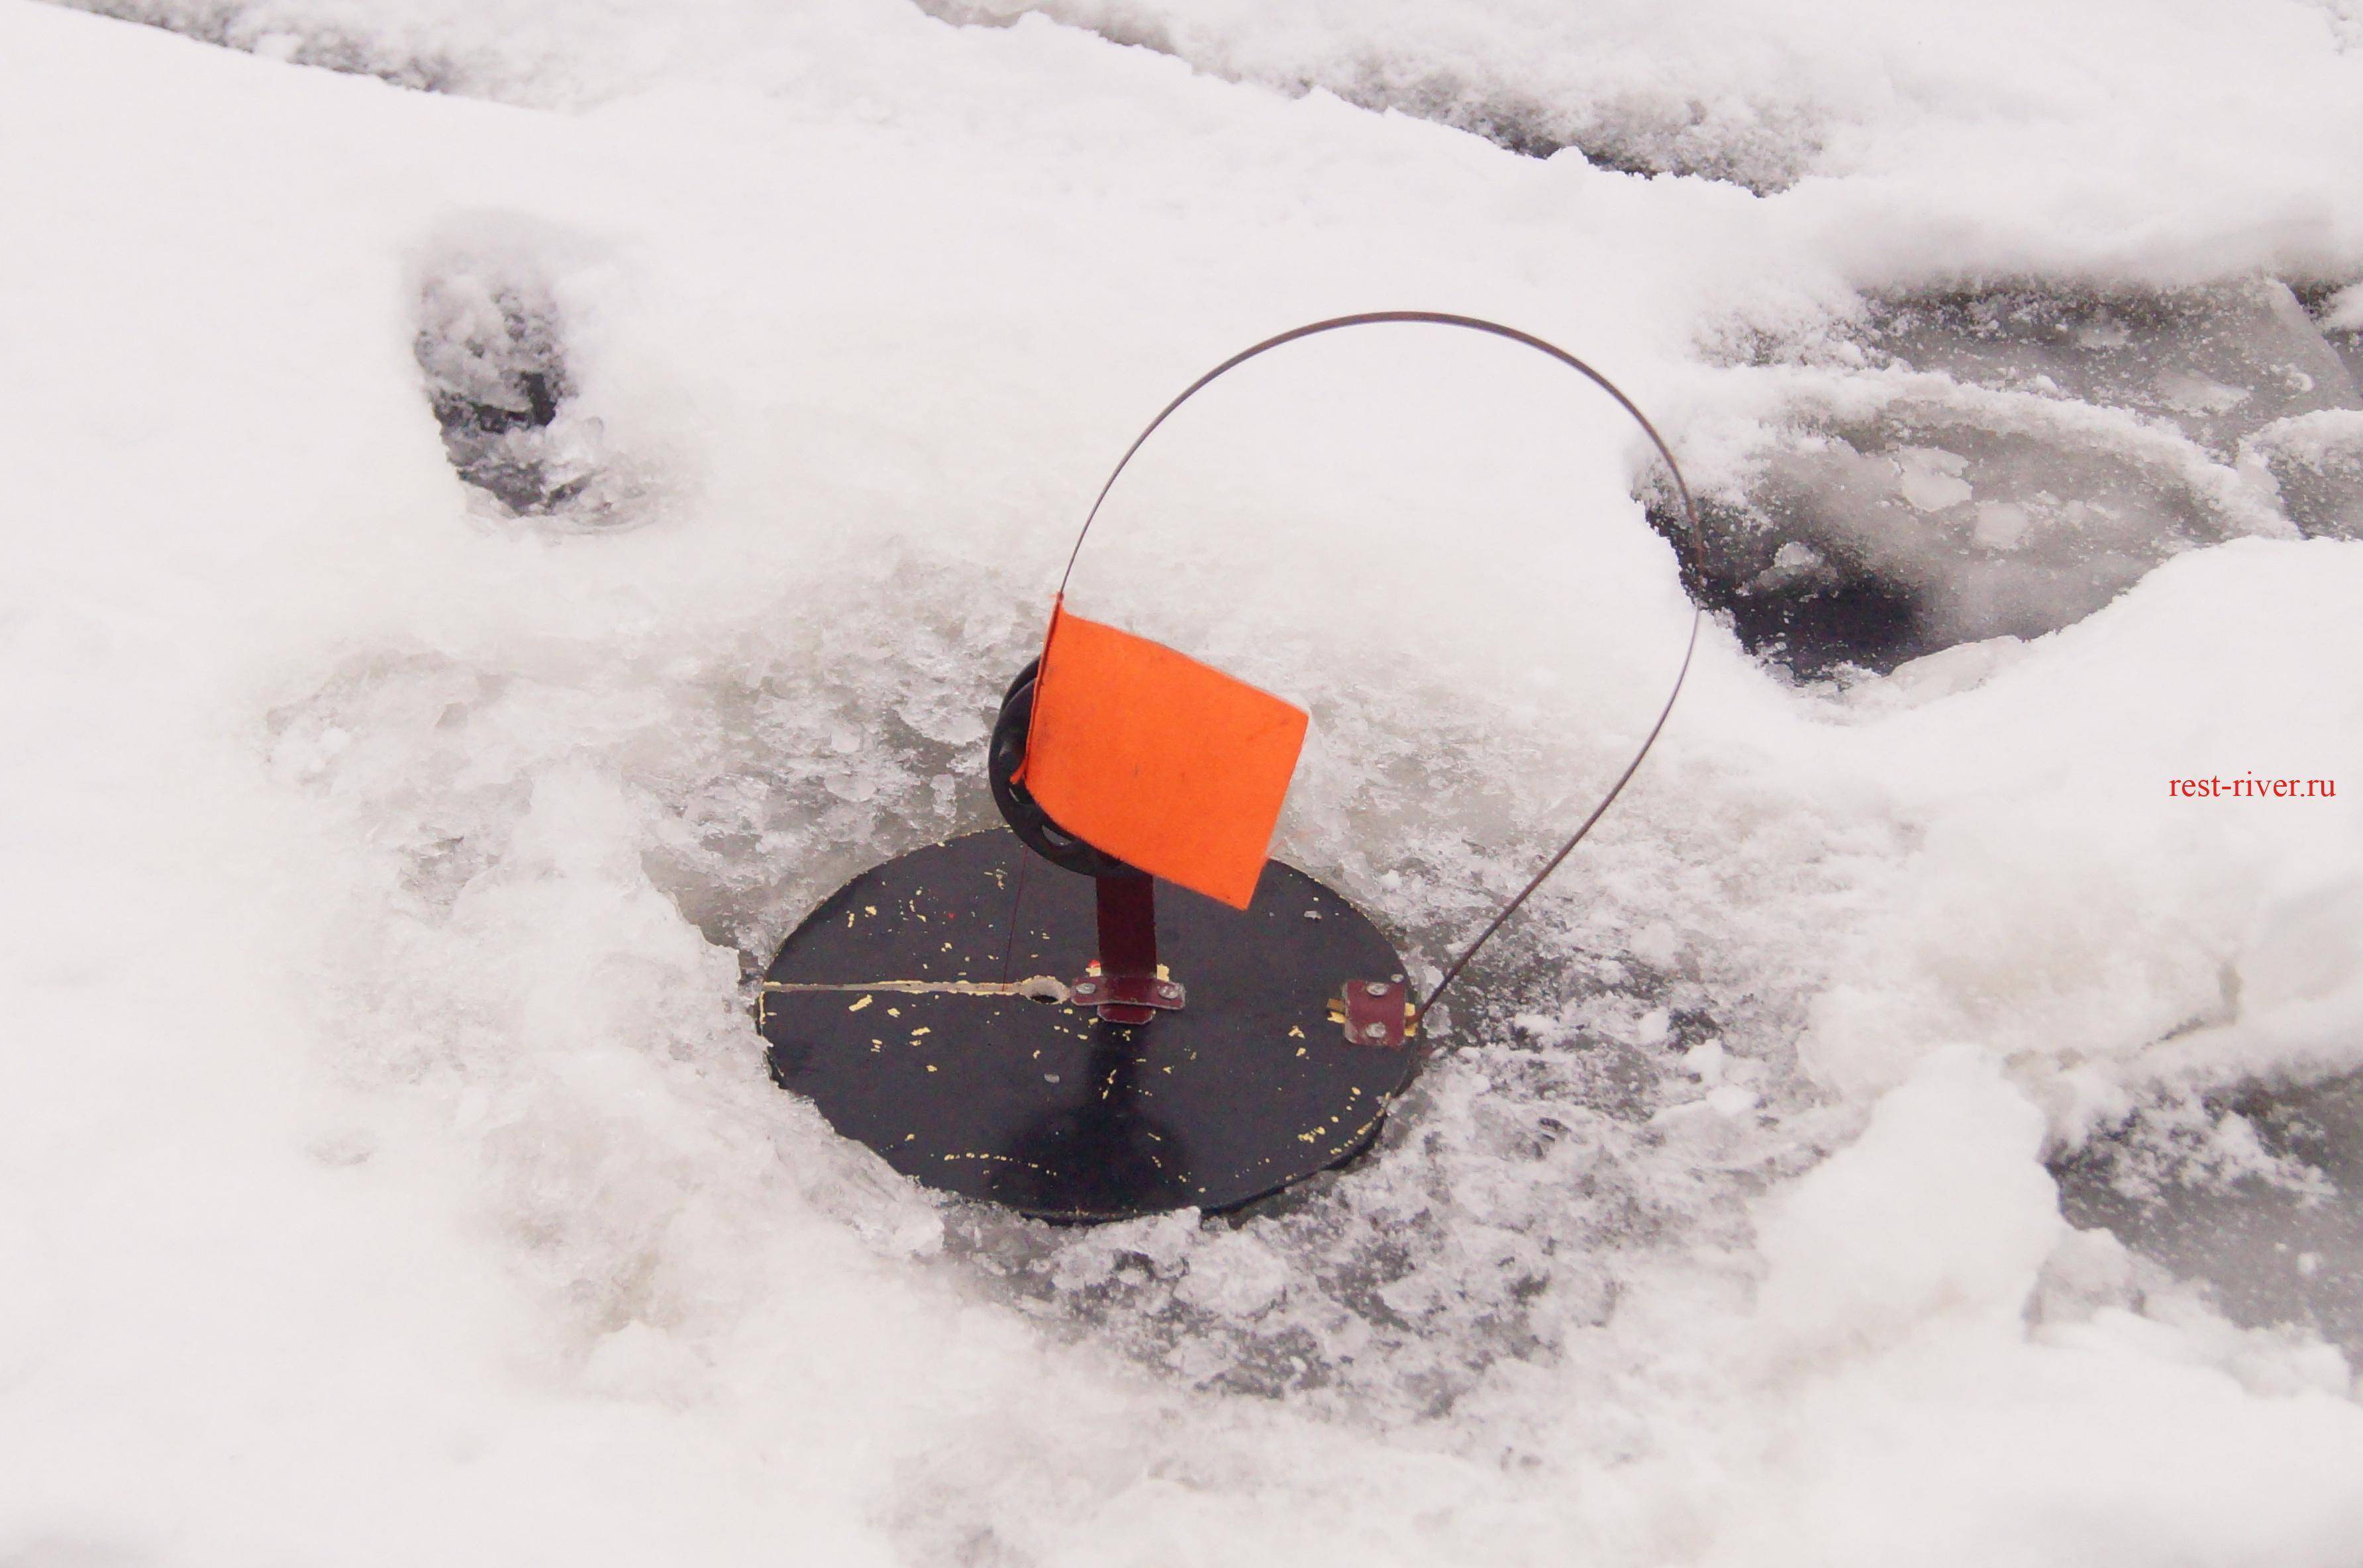 Нюансы оснащения зимней жерлицы в зависимости от условий ловли - спортивное рыболовство